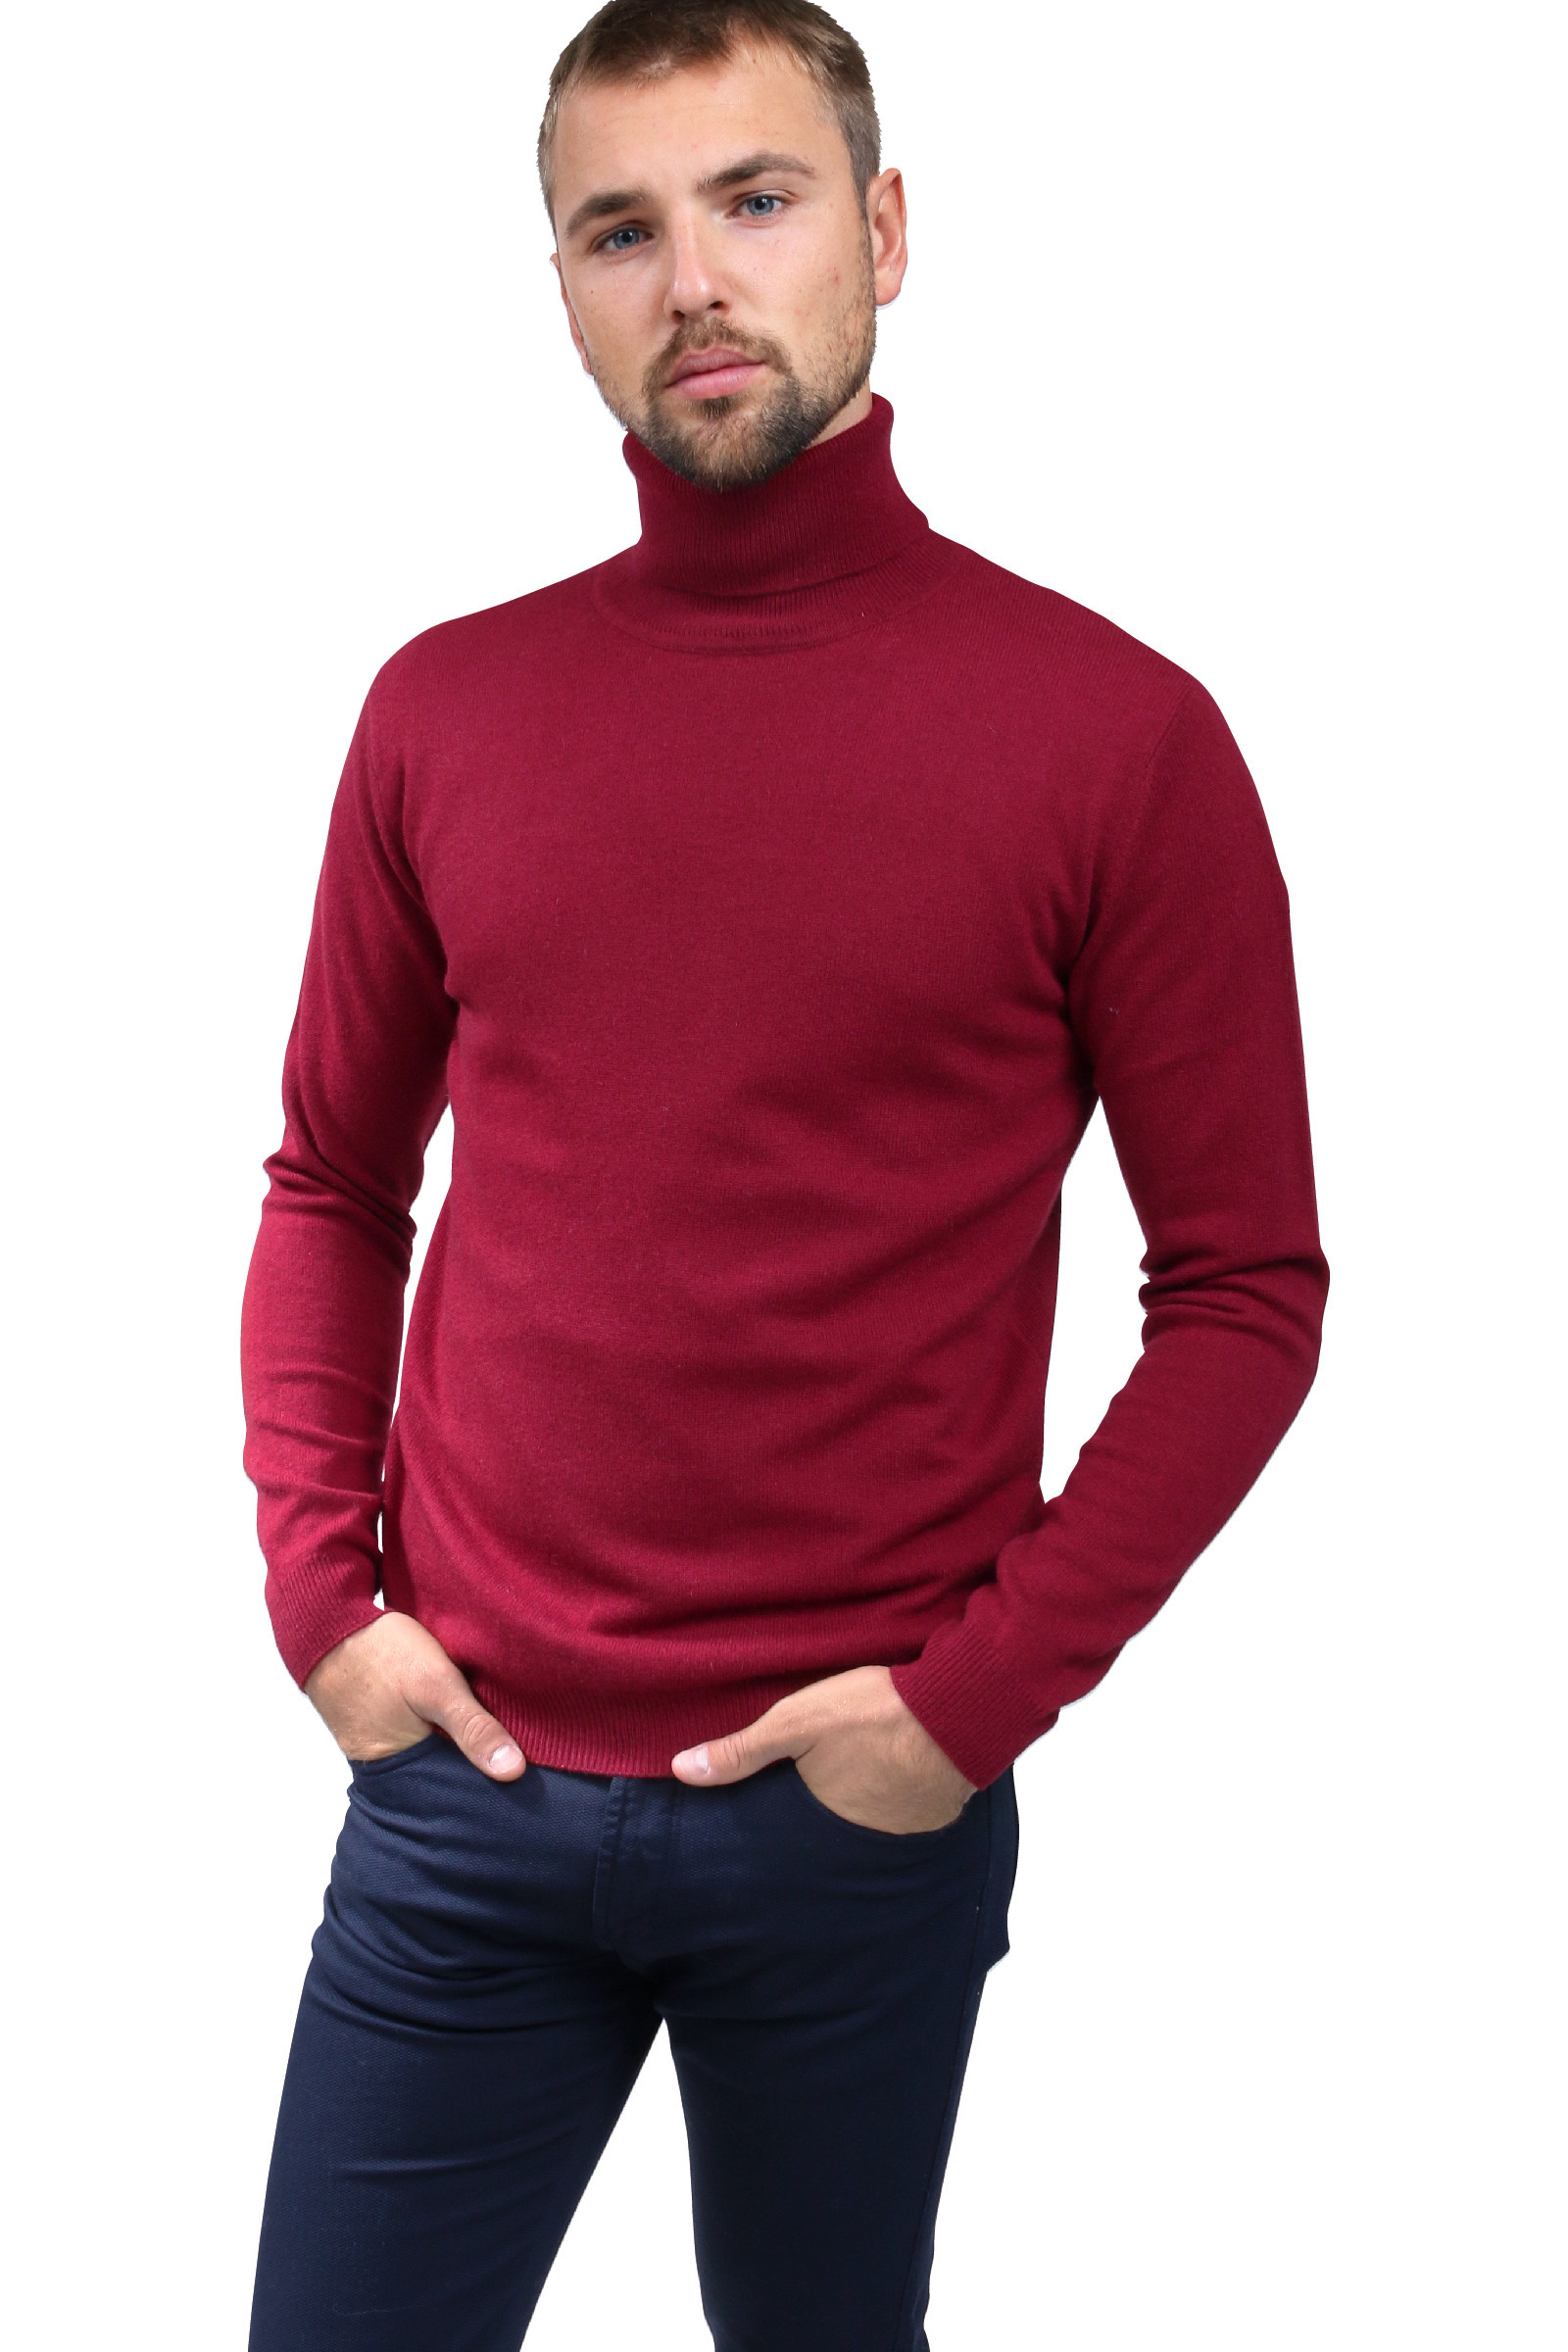 Cashmere turtleneck pullover - DIEGO GARCIA